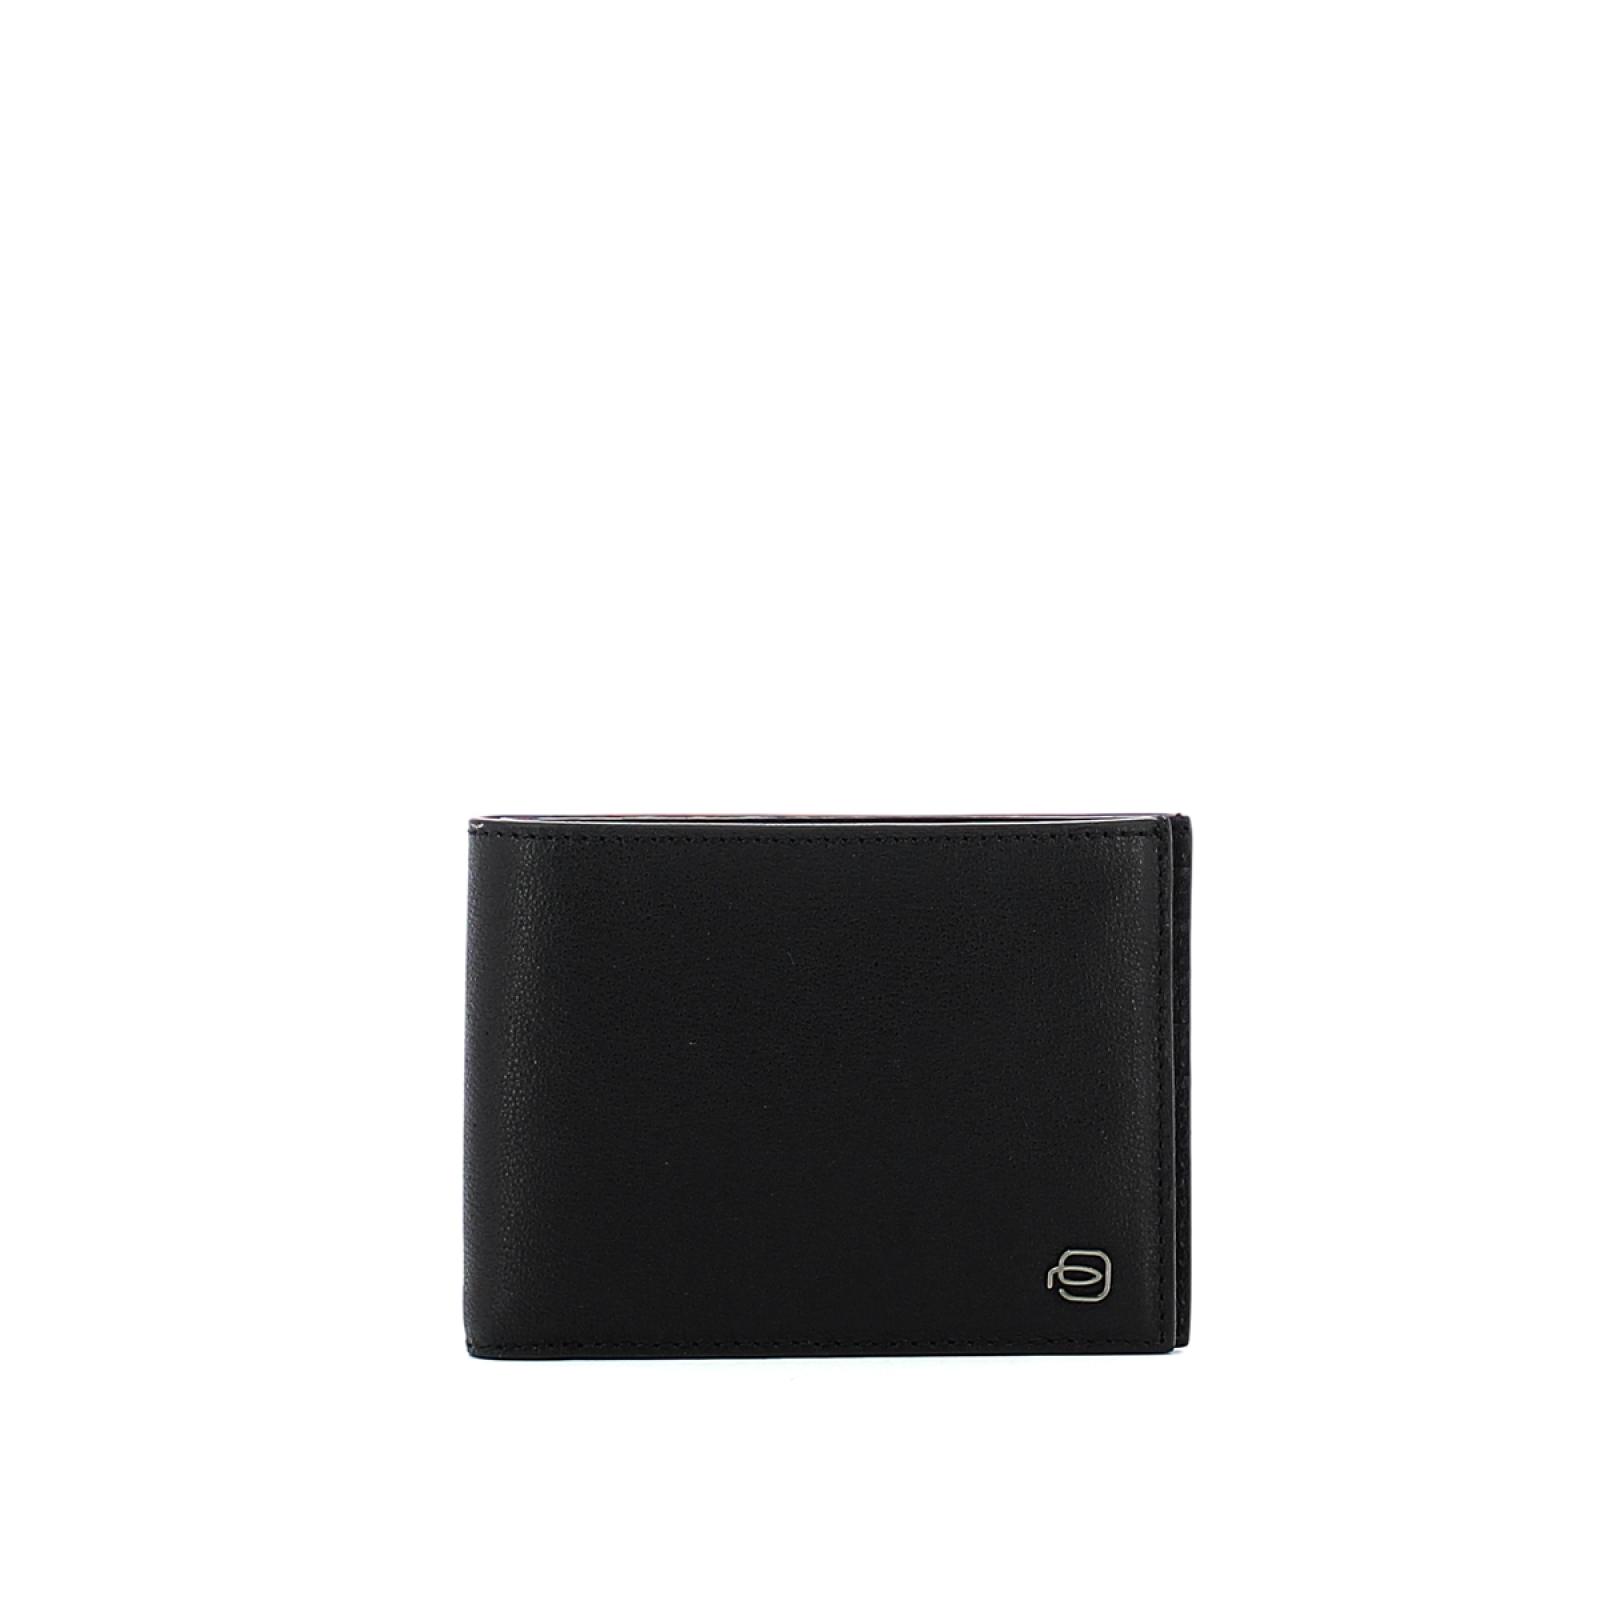 Men wallet with twelve slots Black Square RFID